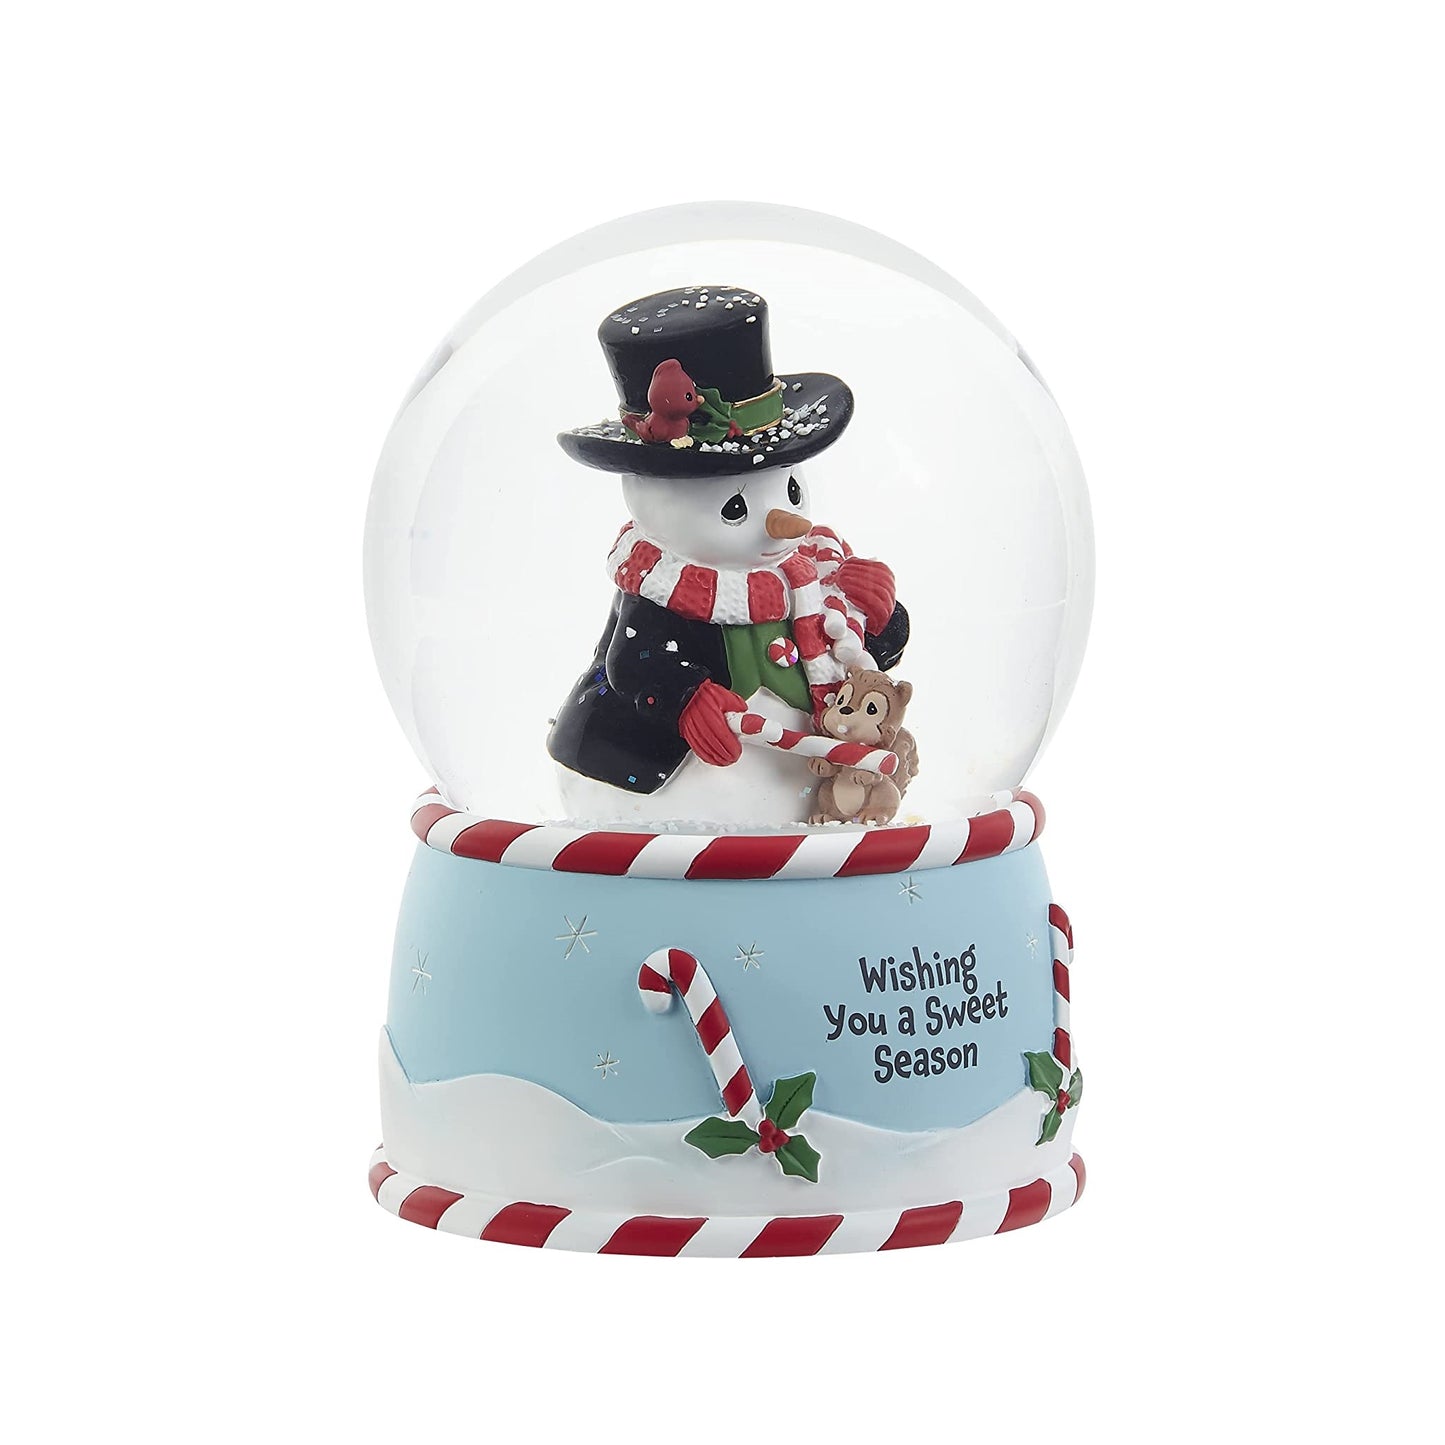 Precious Moments Wishing You A Sweet Season Annual Snowman Musical Snow Globe